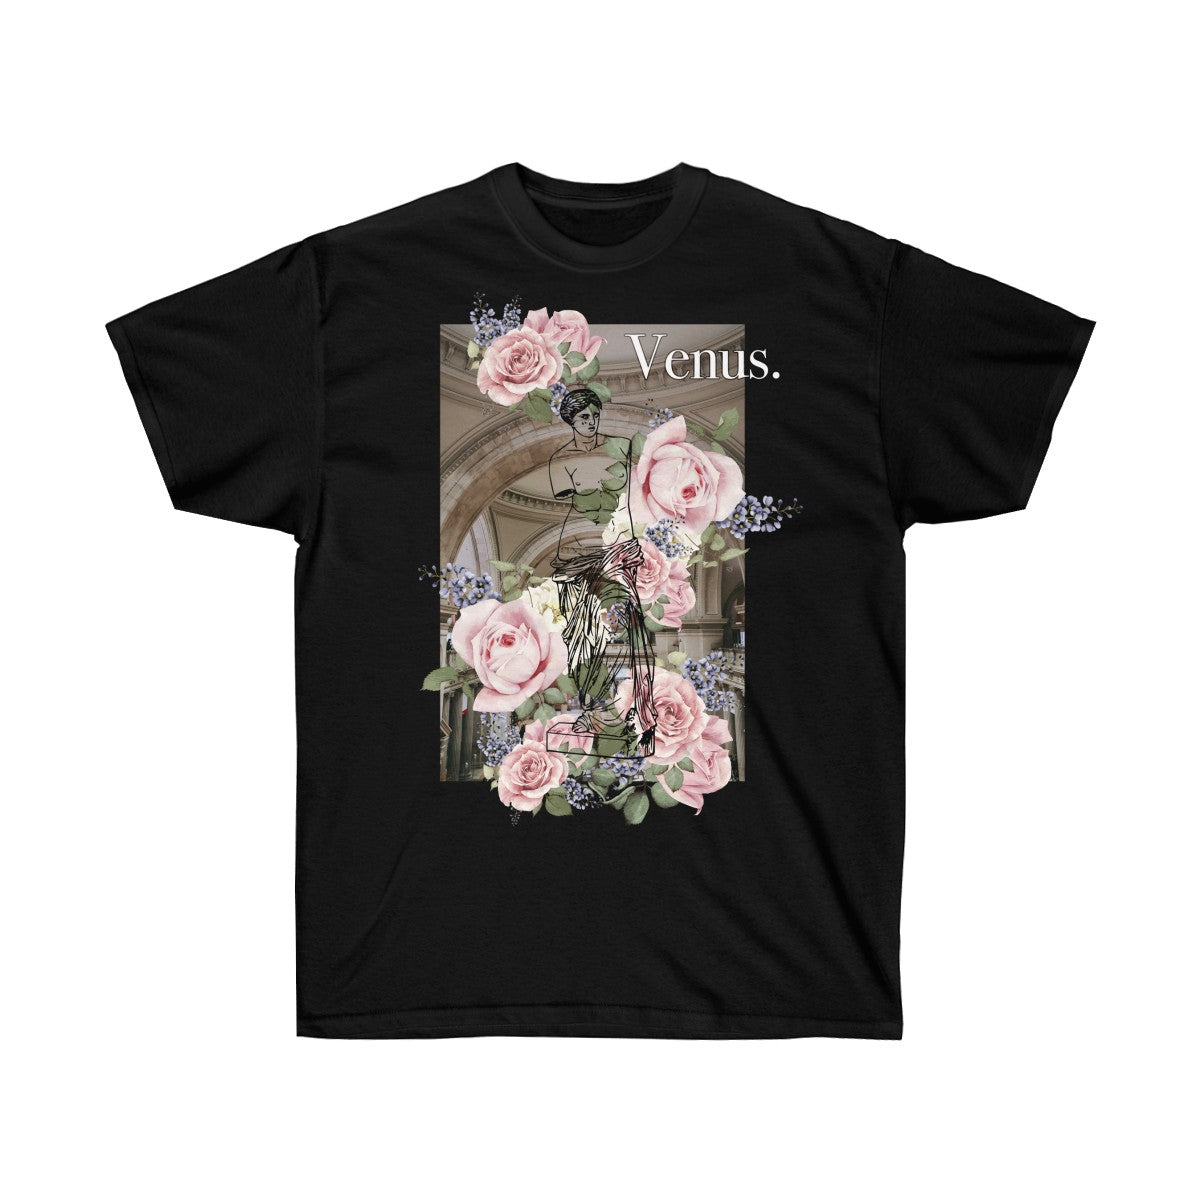 Venus & Flowers shirt